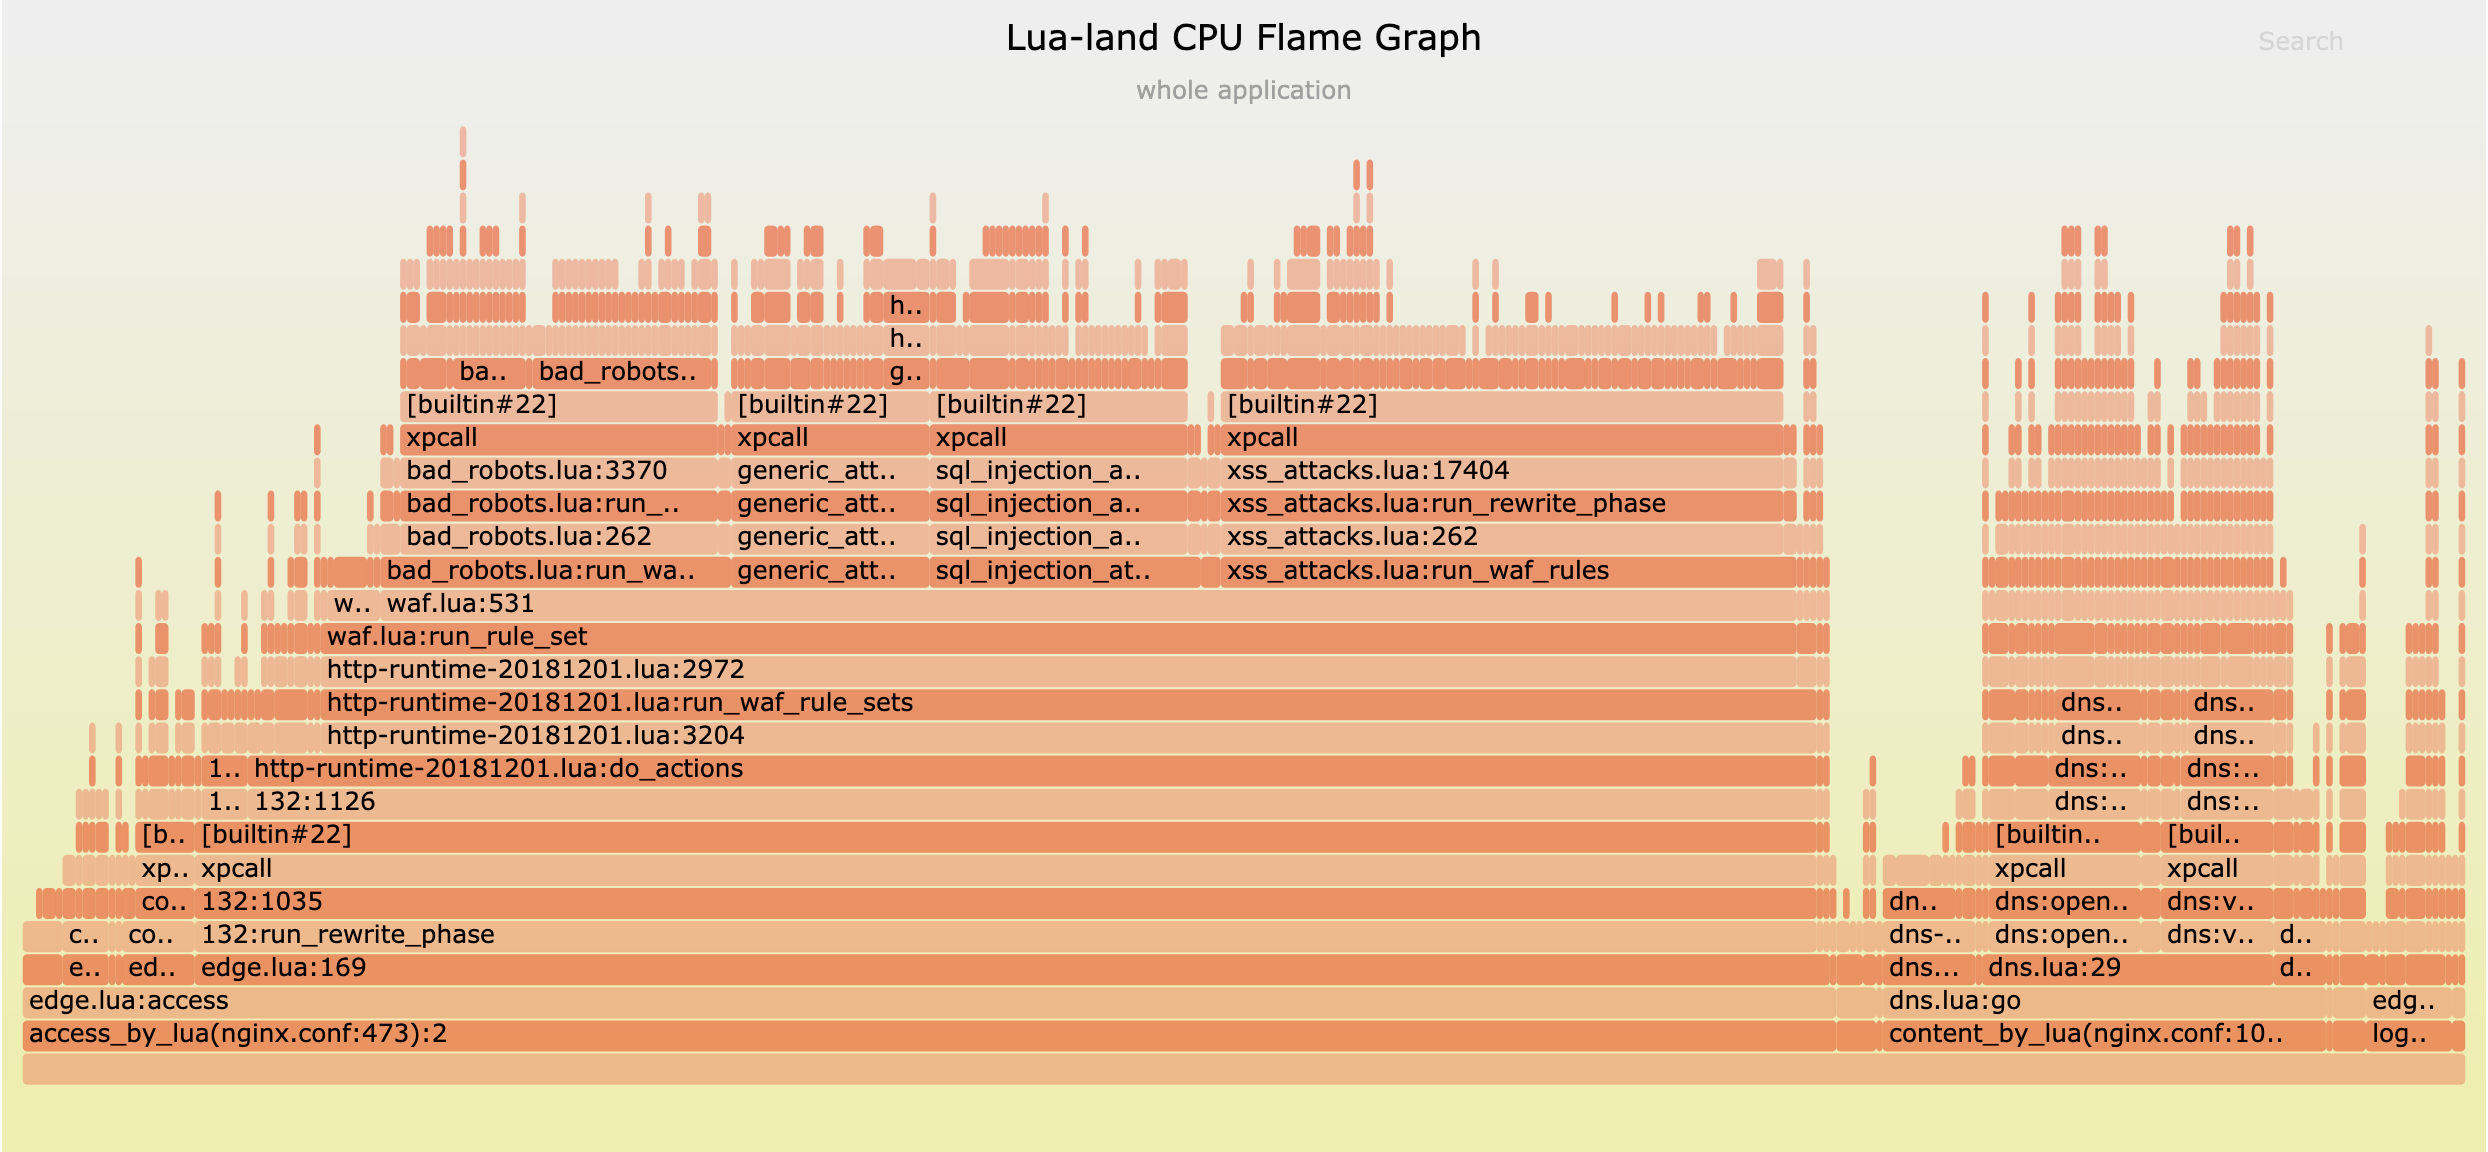 Lua-land CPU flame graph for our mini-CDN server